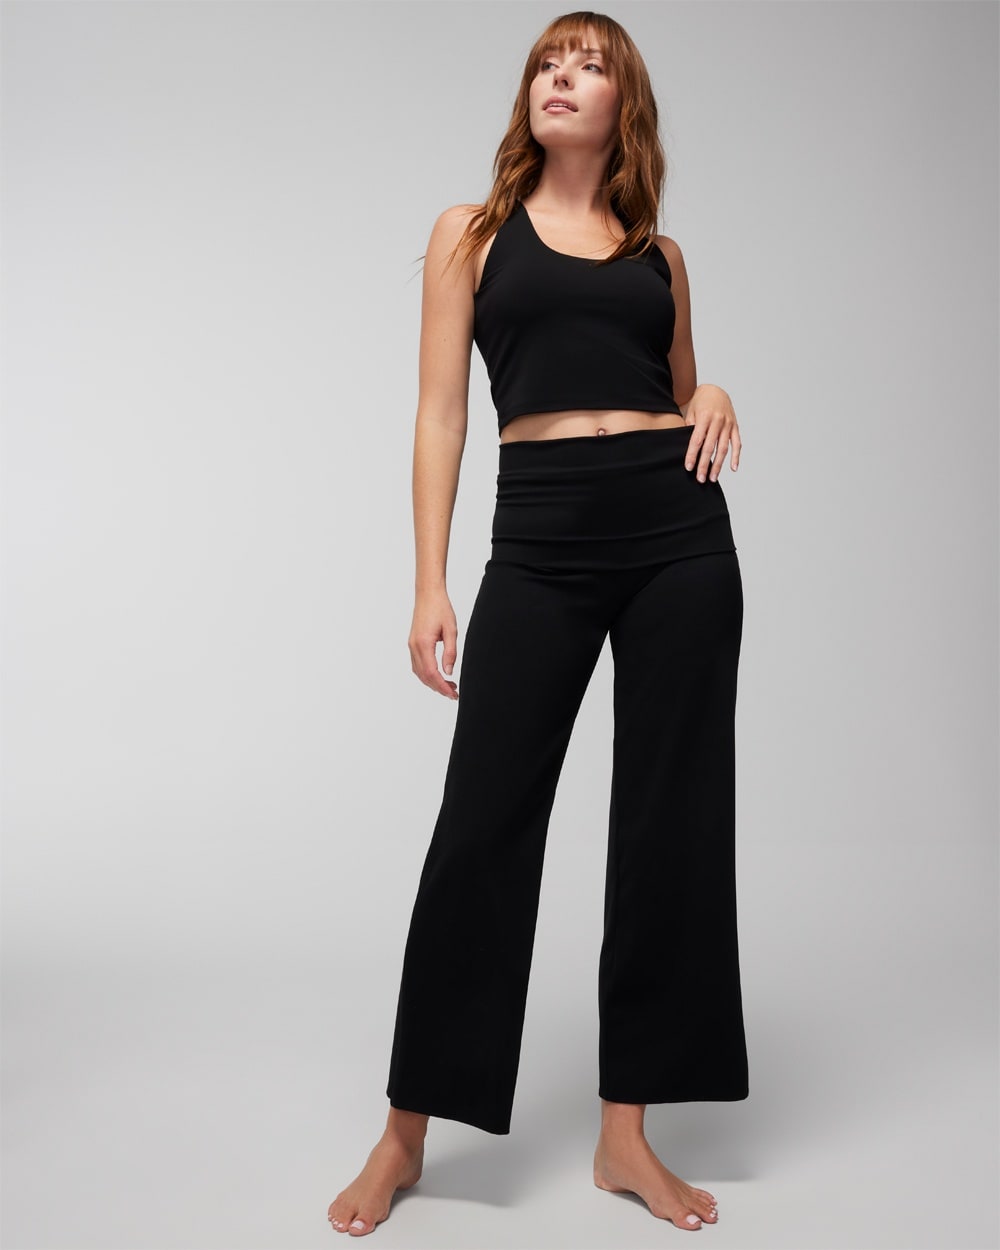 T Party Women's Yoga Foldover Capri Pants, Black, Small